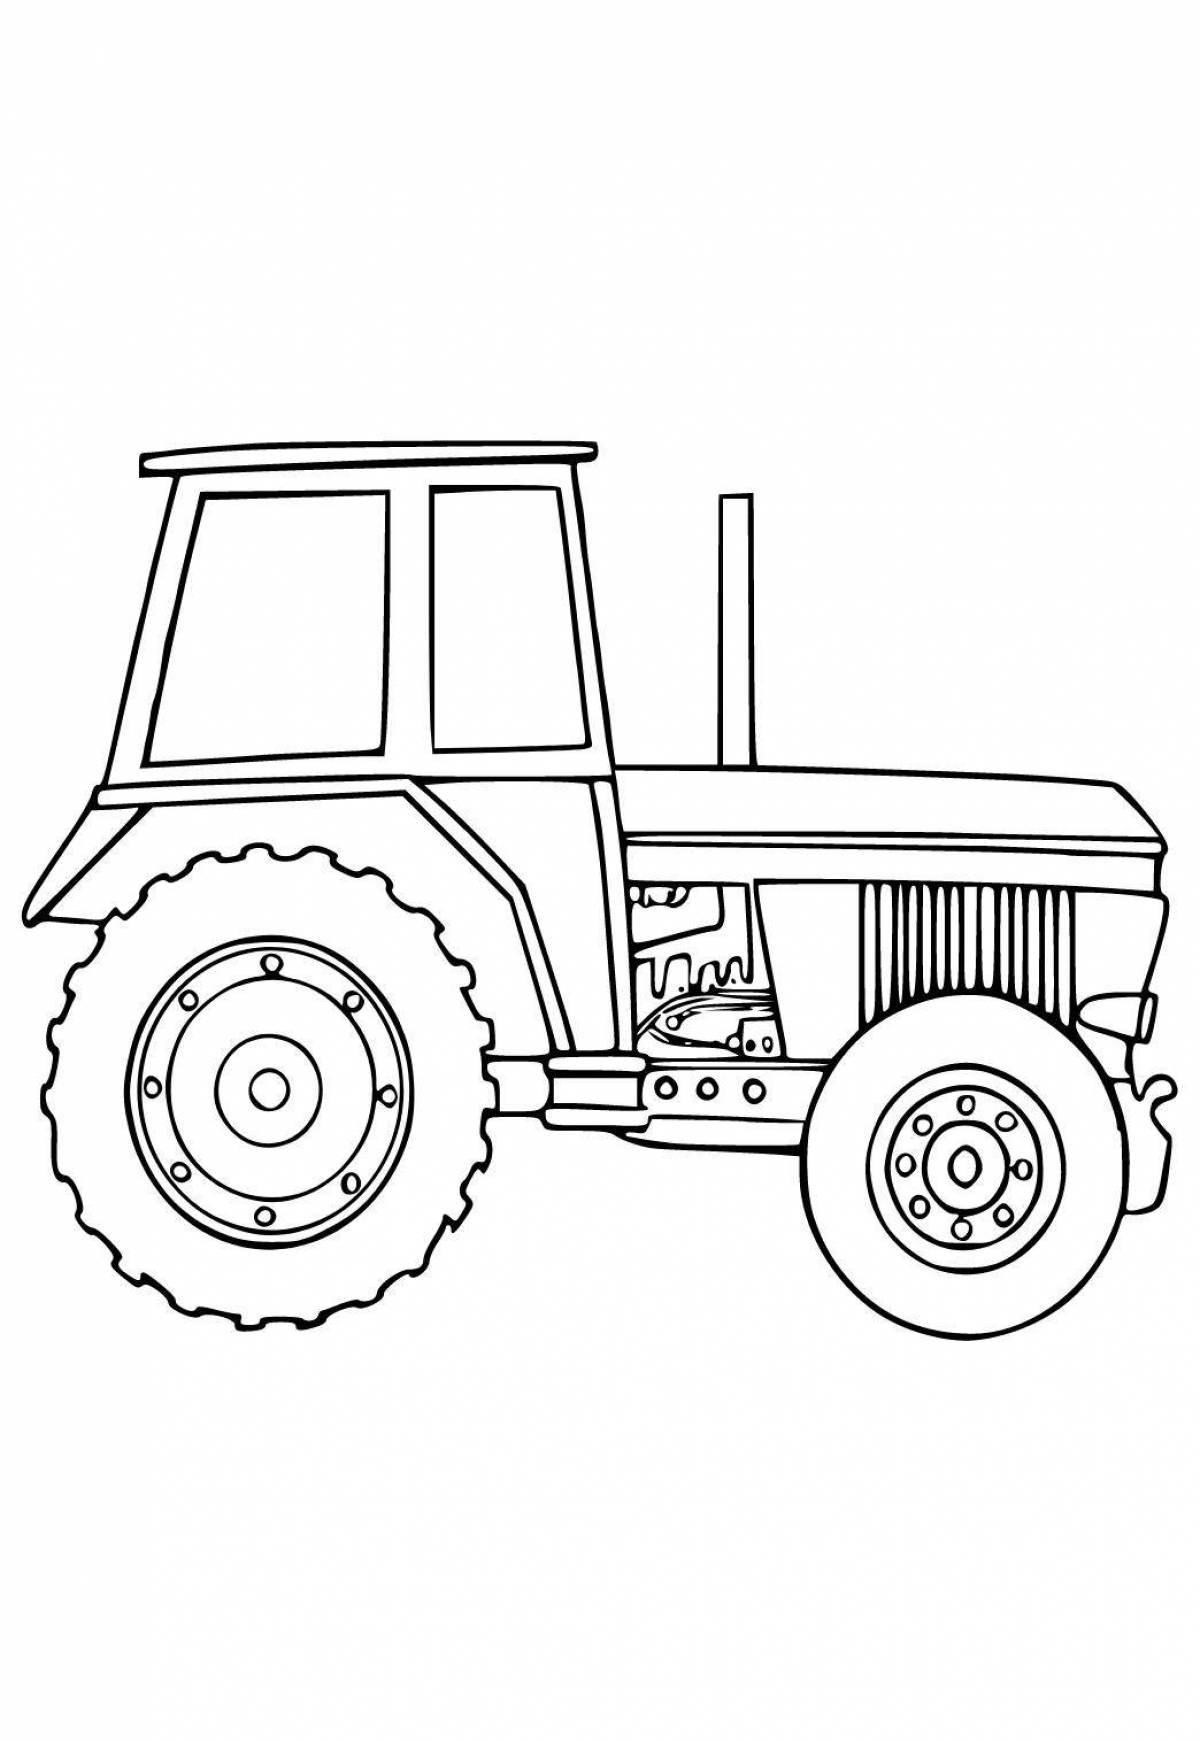 трактор картинки для детей нарисованные